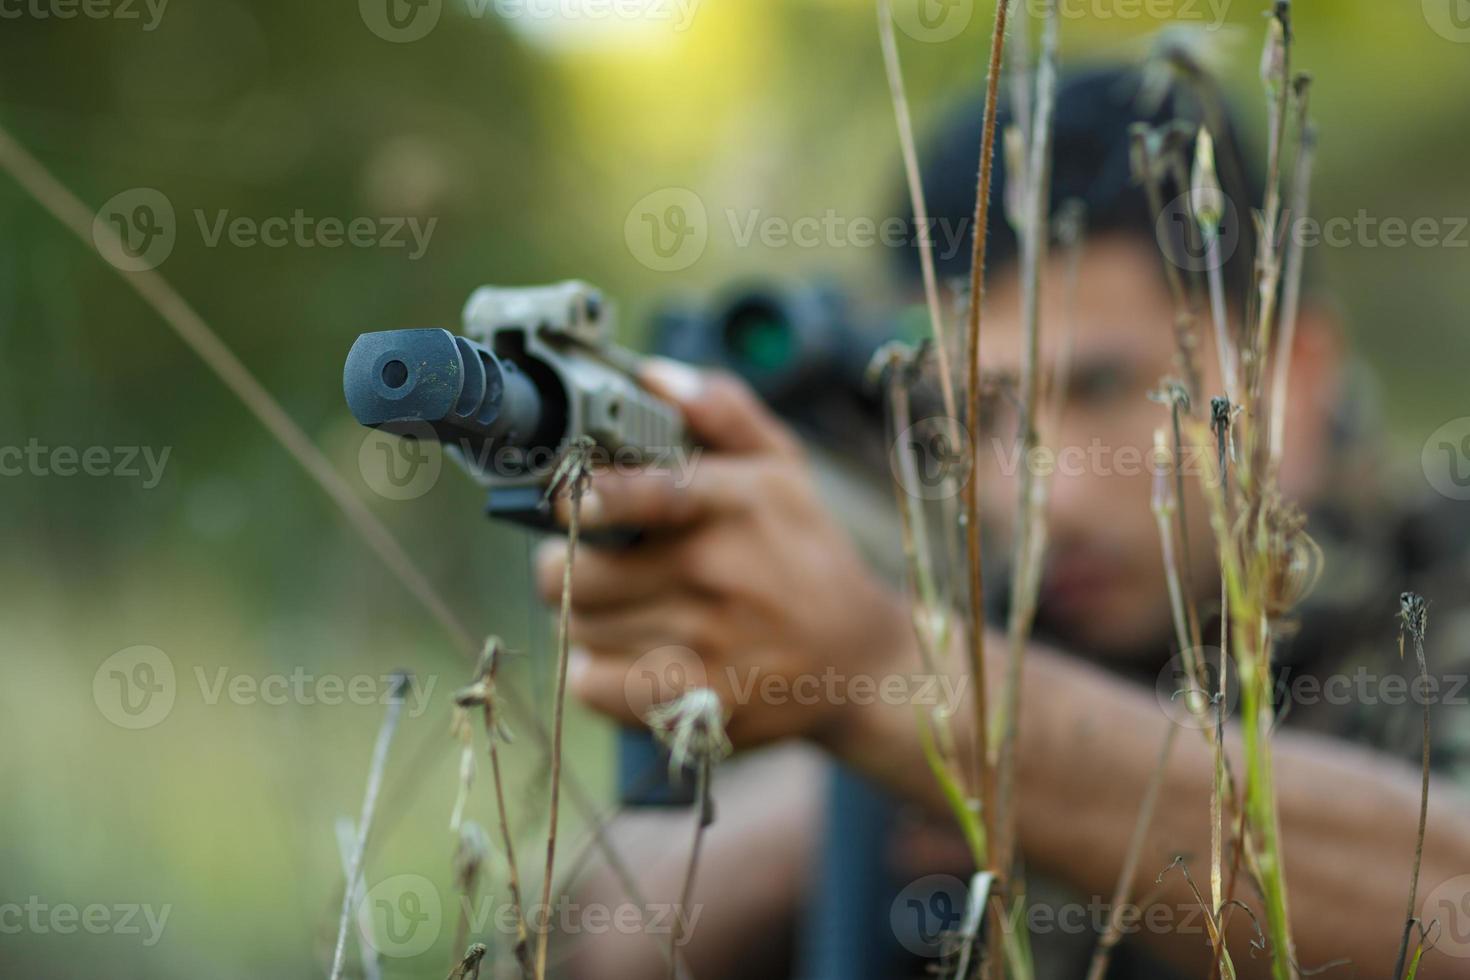 jong mannetje soldaat met machine geweer foto